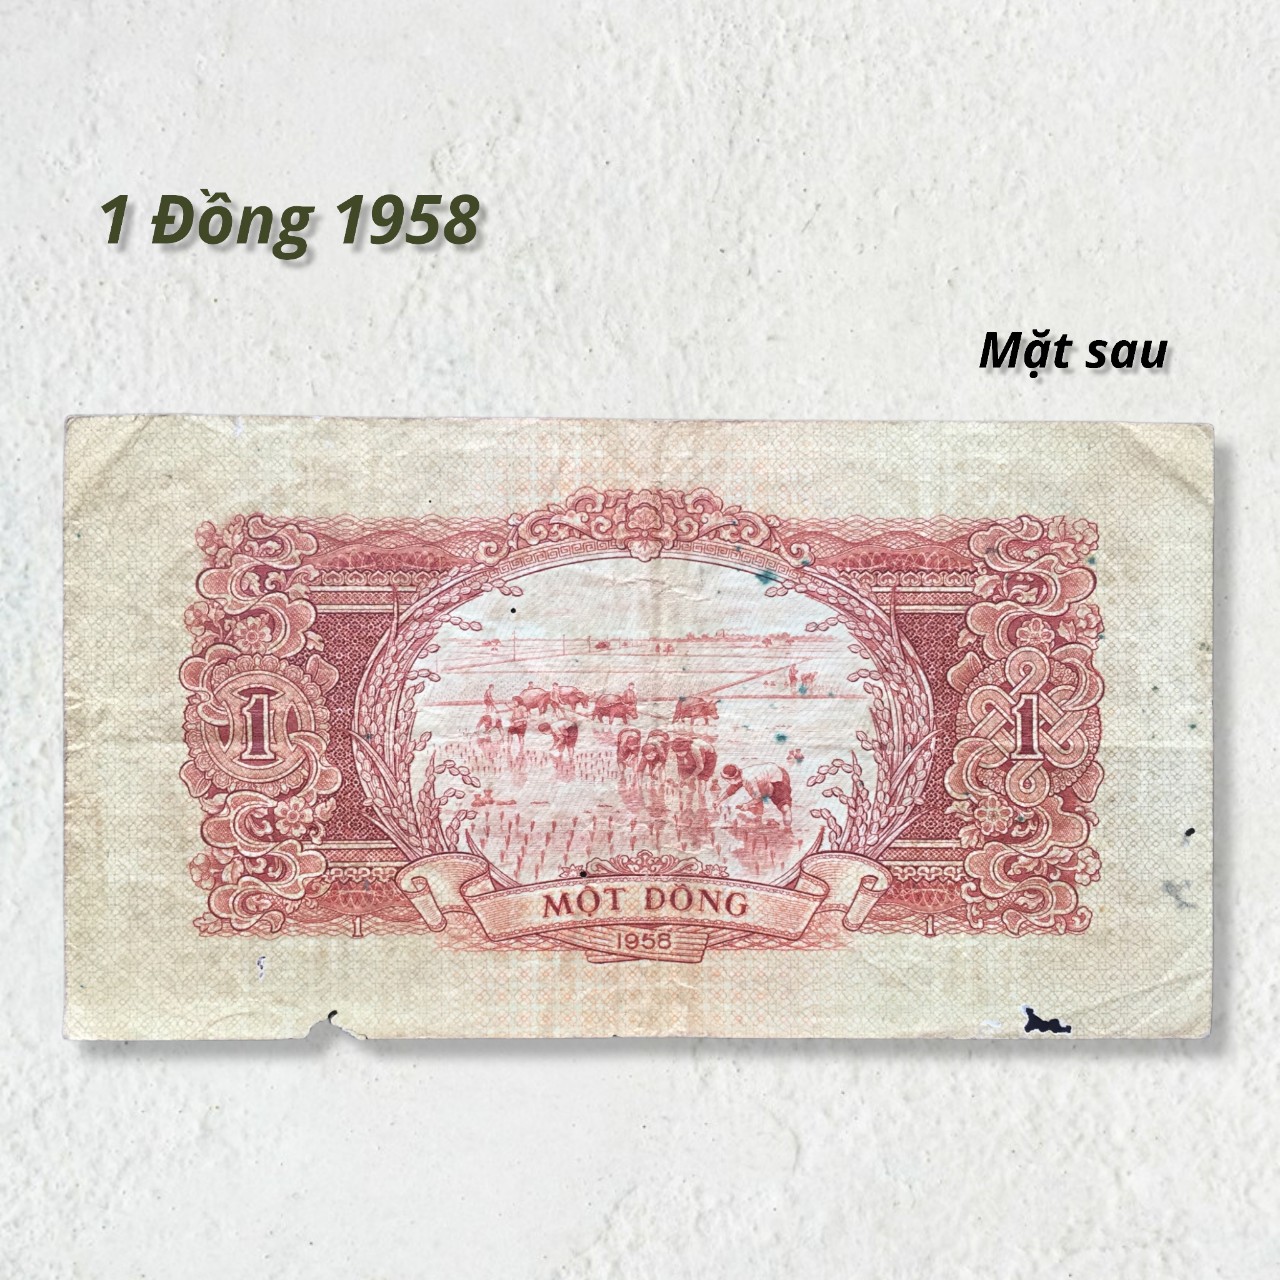 Tiền xưa Việt Nam 1 đồng 1958 hình Cột Cờ Hà Nội chất lượng cũ như hình.